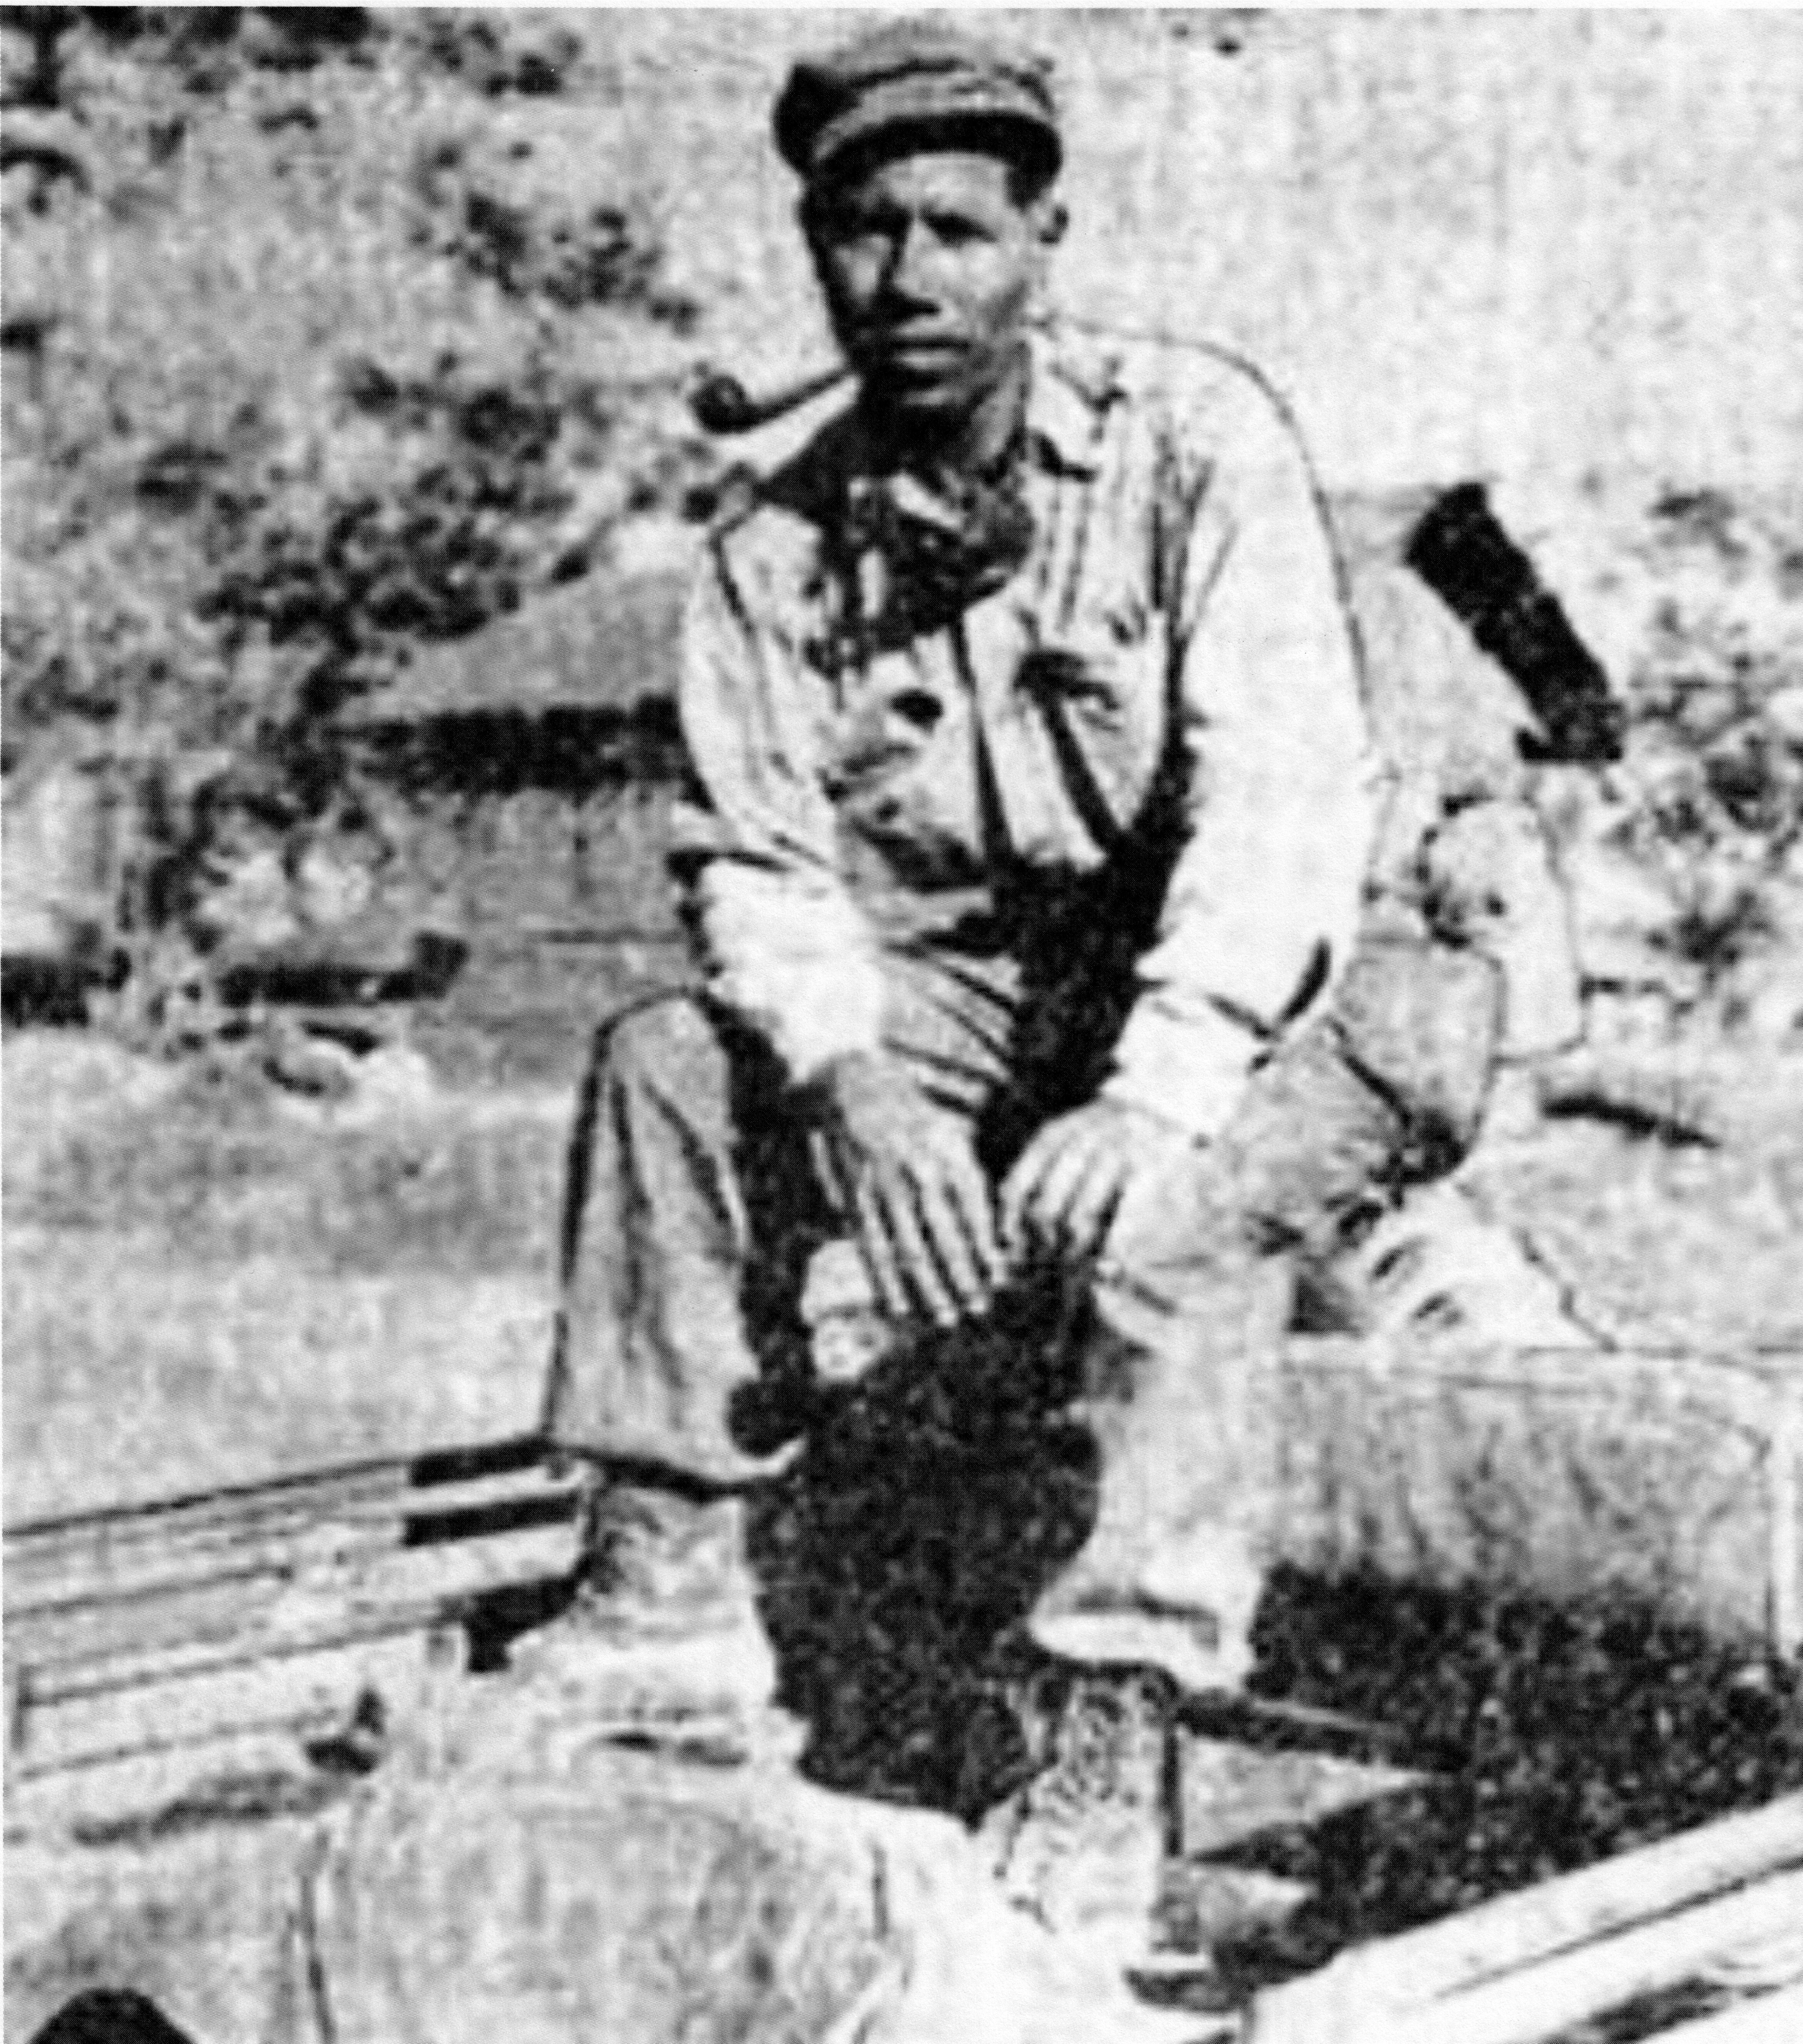 Deton Brooks in India, ca. 1945